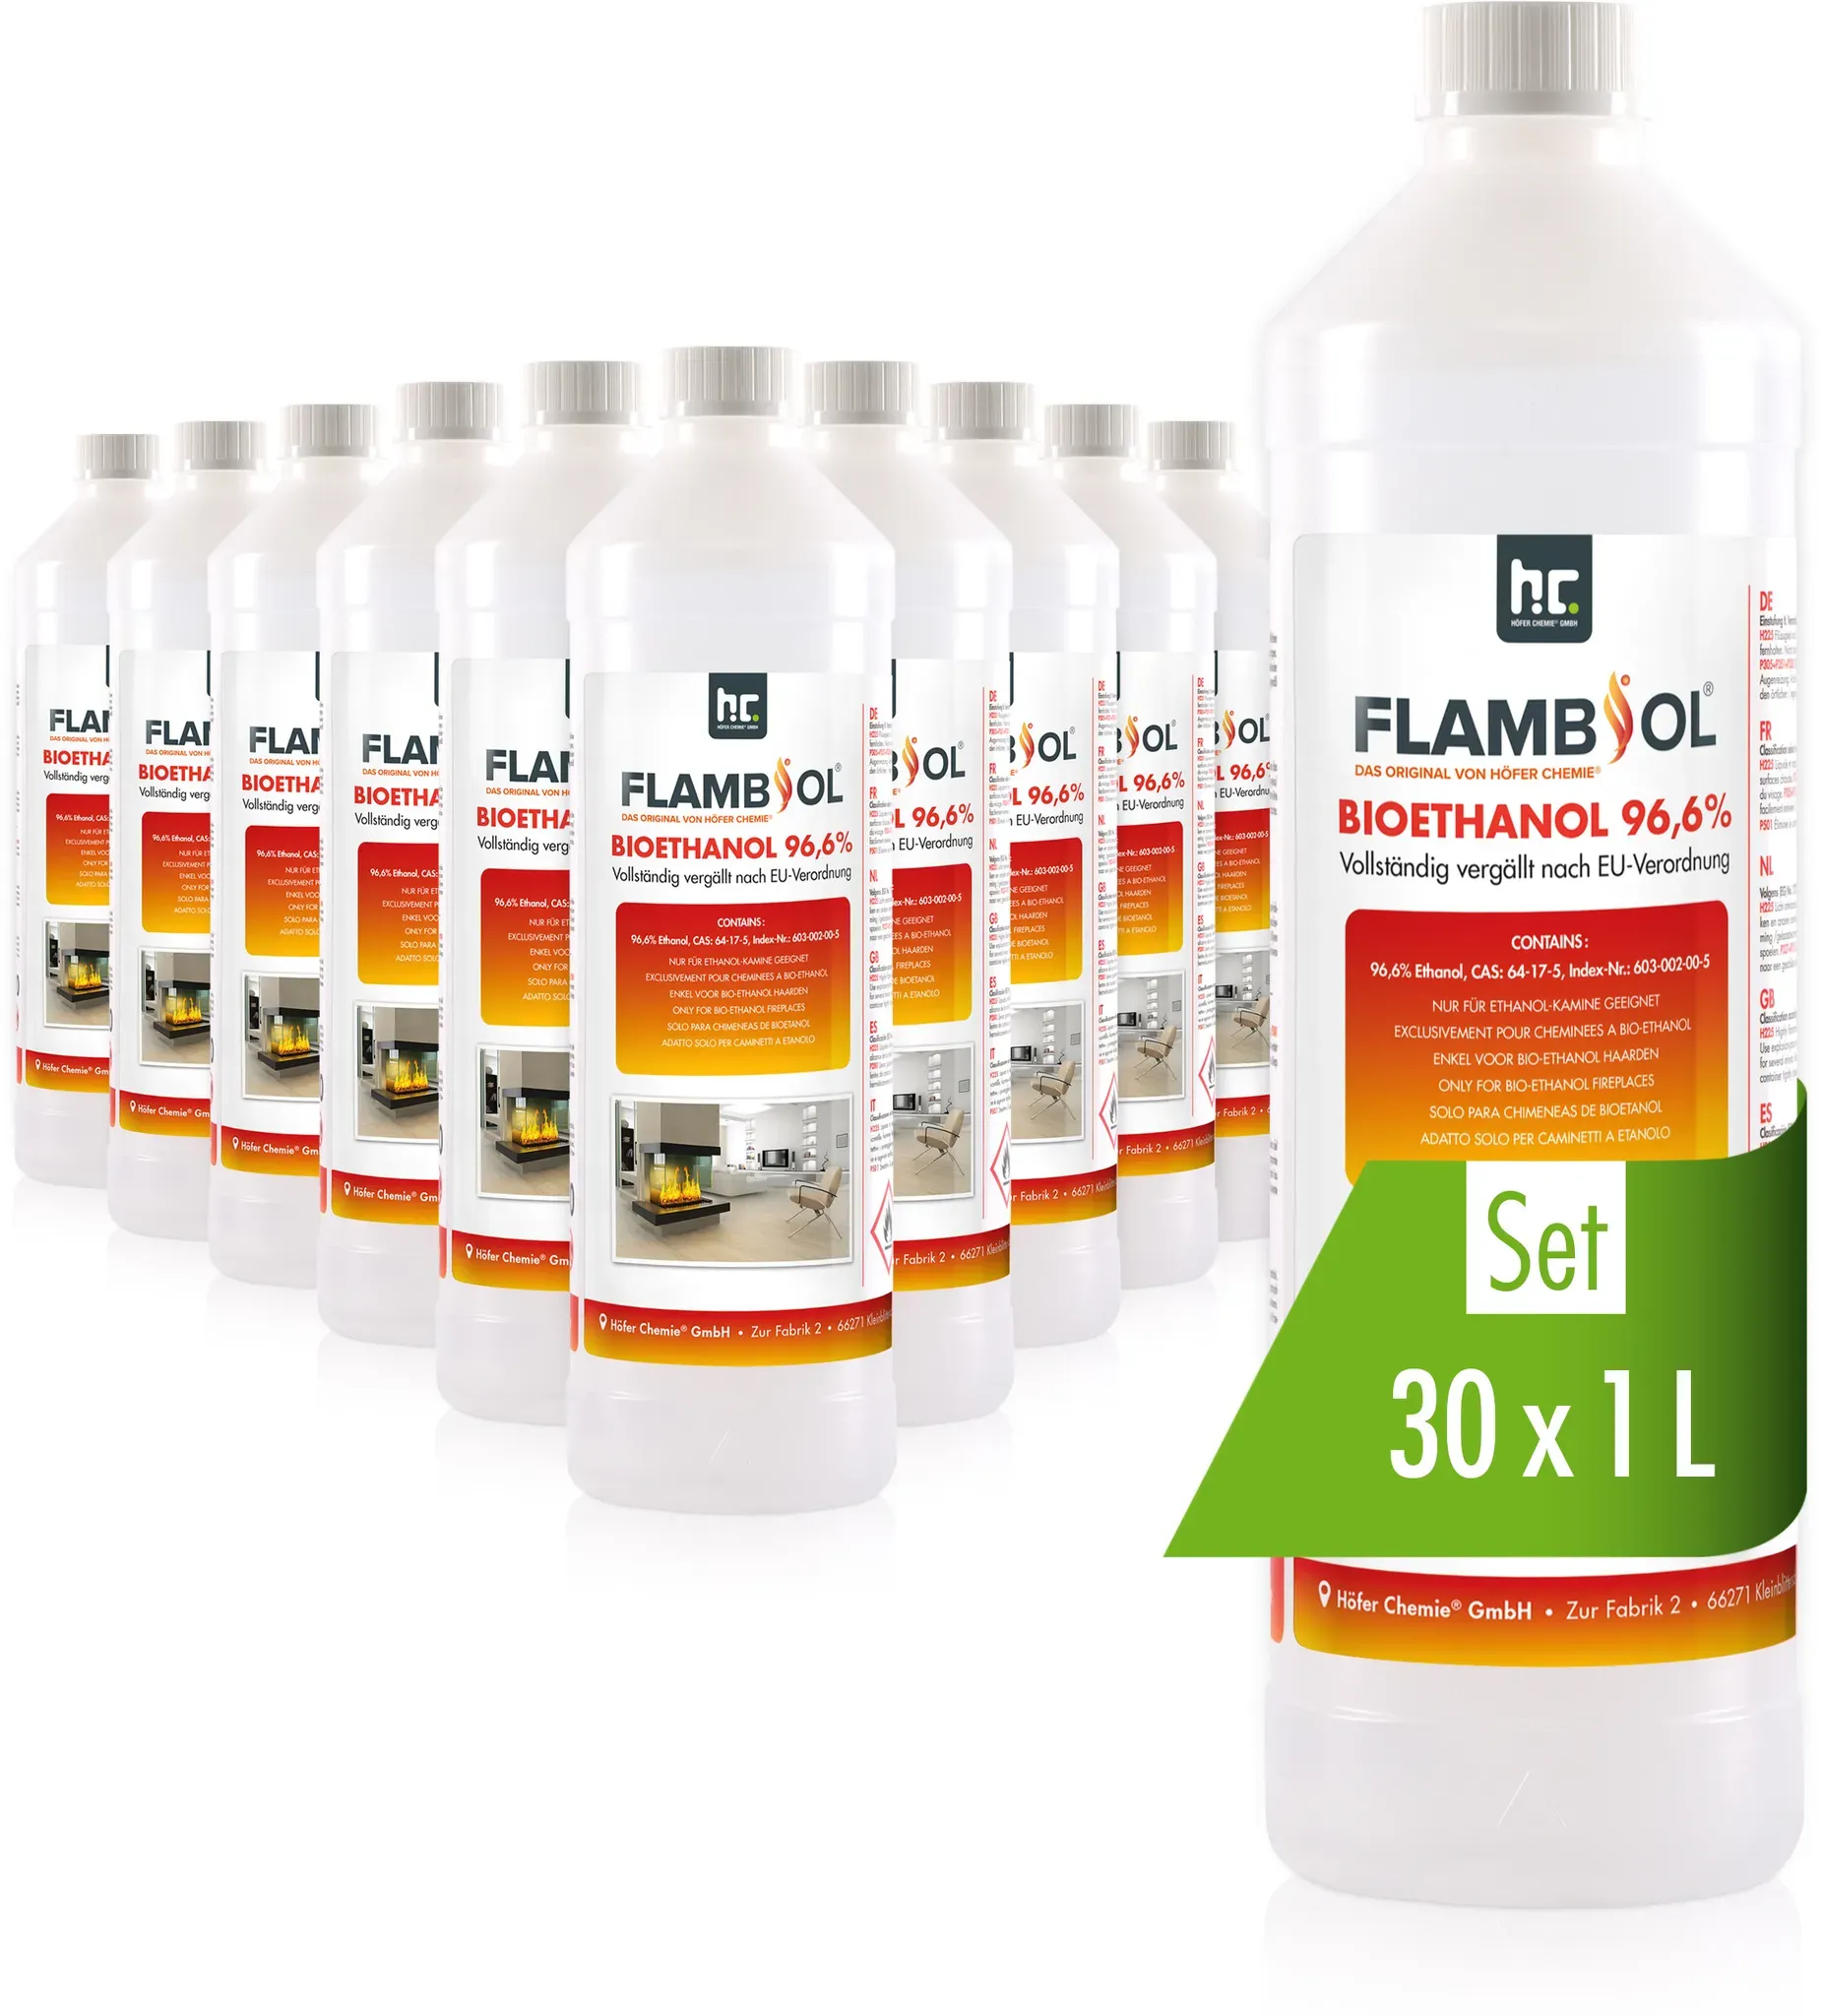 30 x 1 L FLAMBIOL® Bioéthanol 96,6% Premium (en bouteille) pour cheminée de tabl...